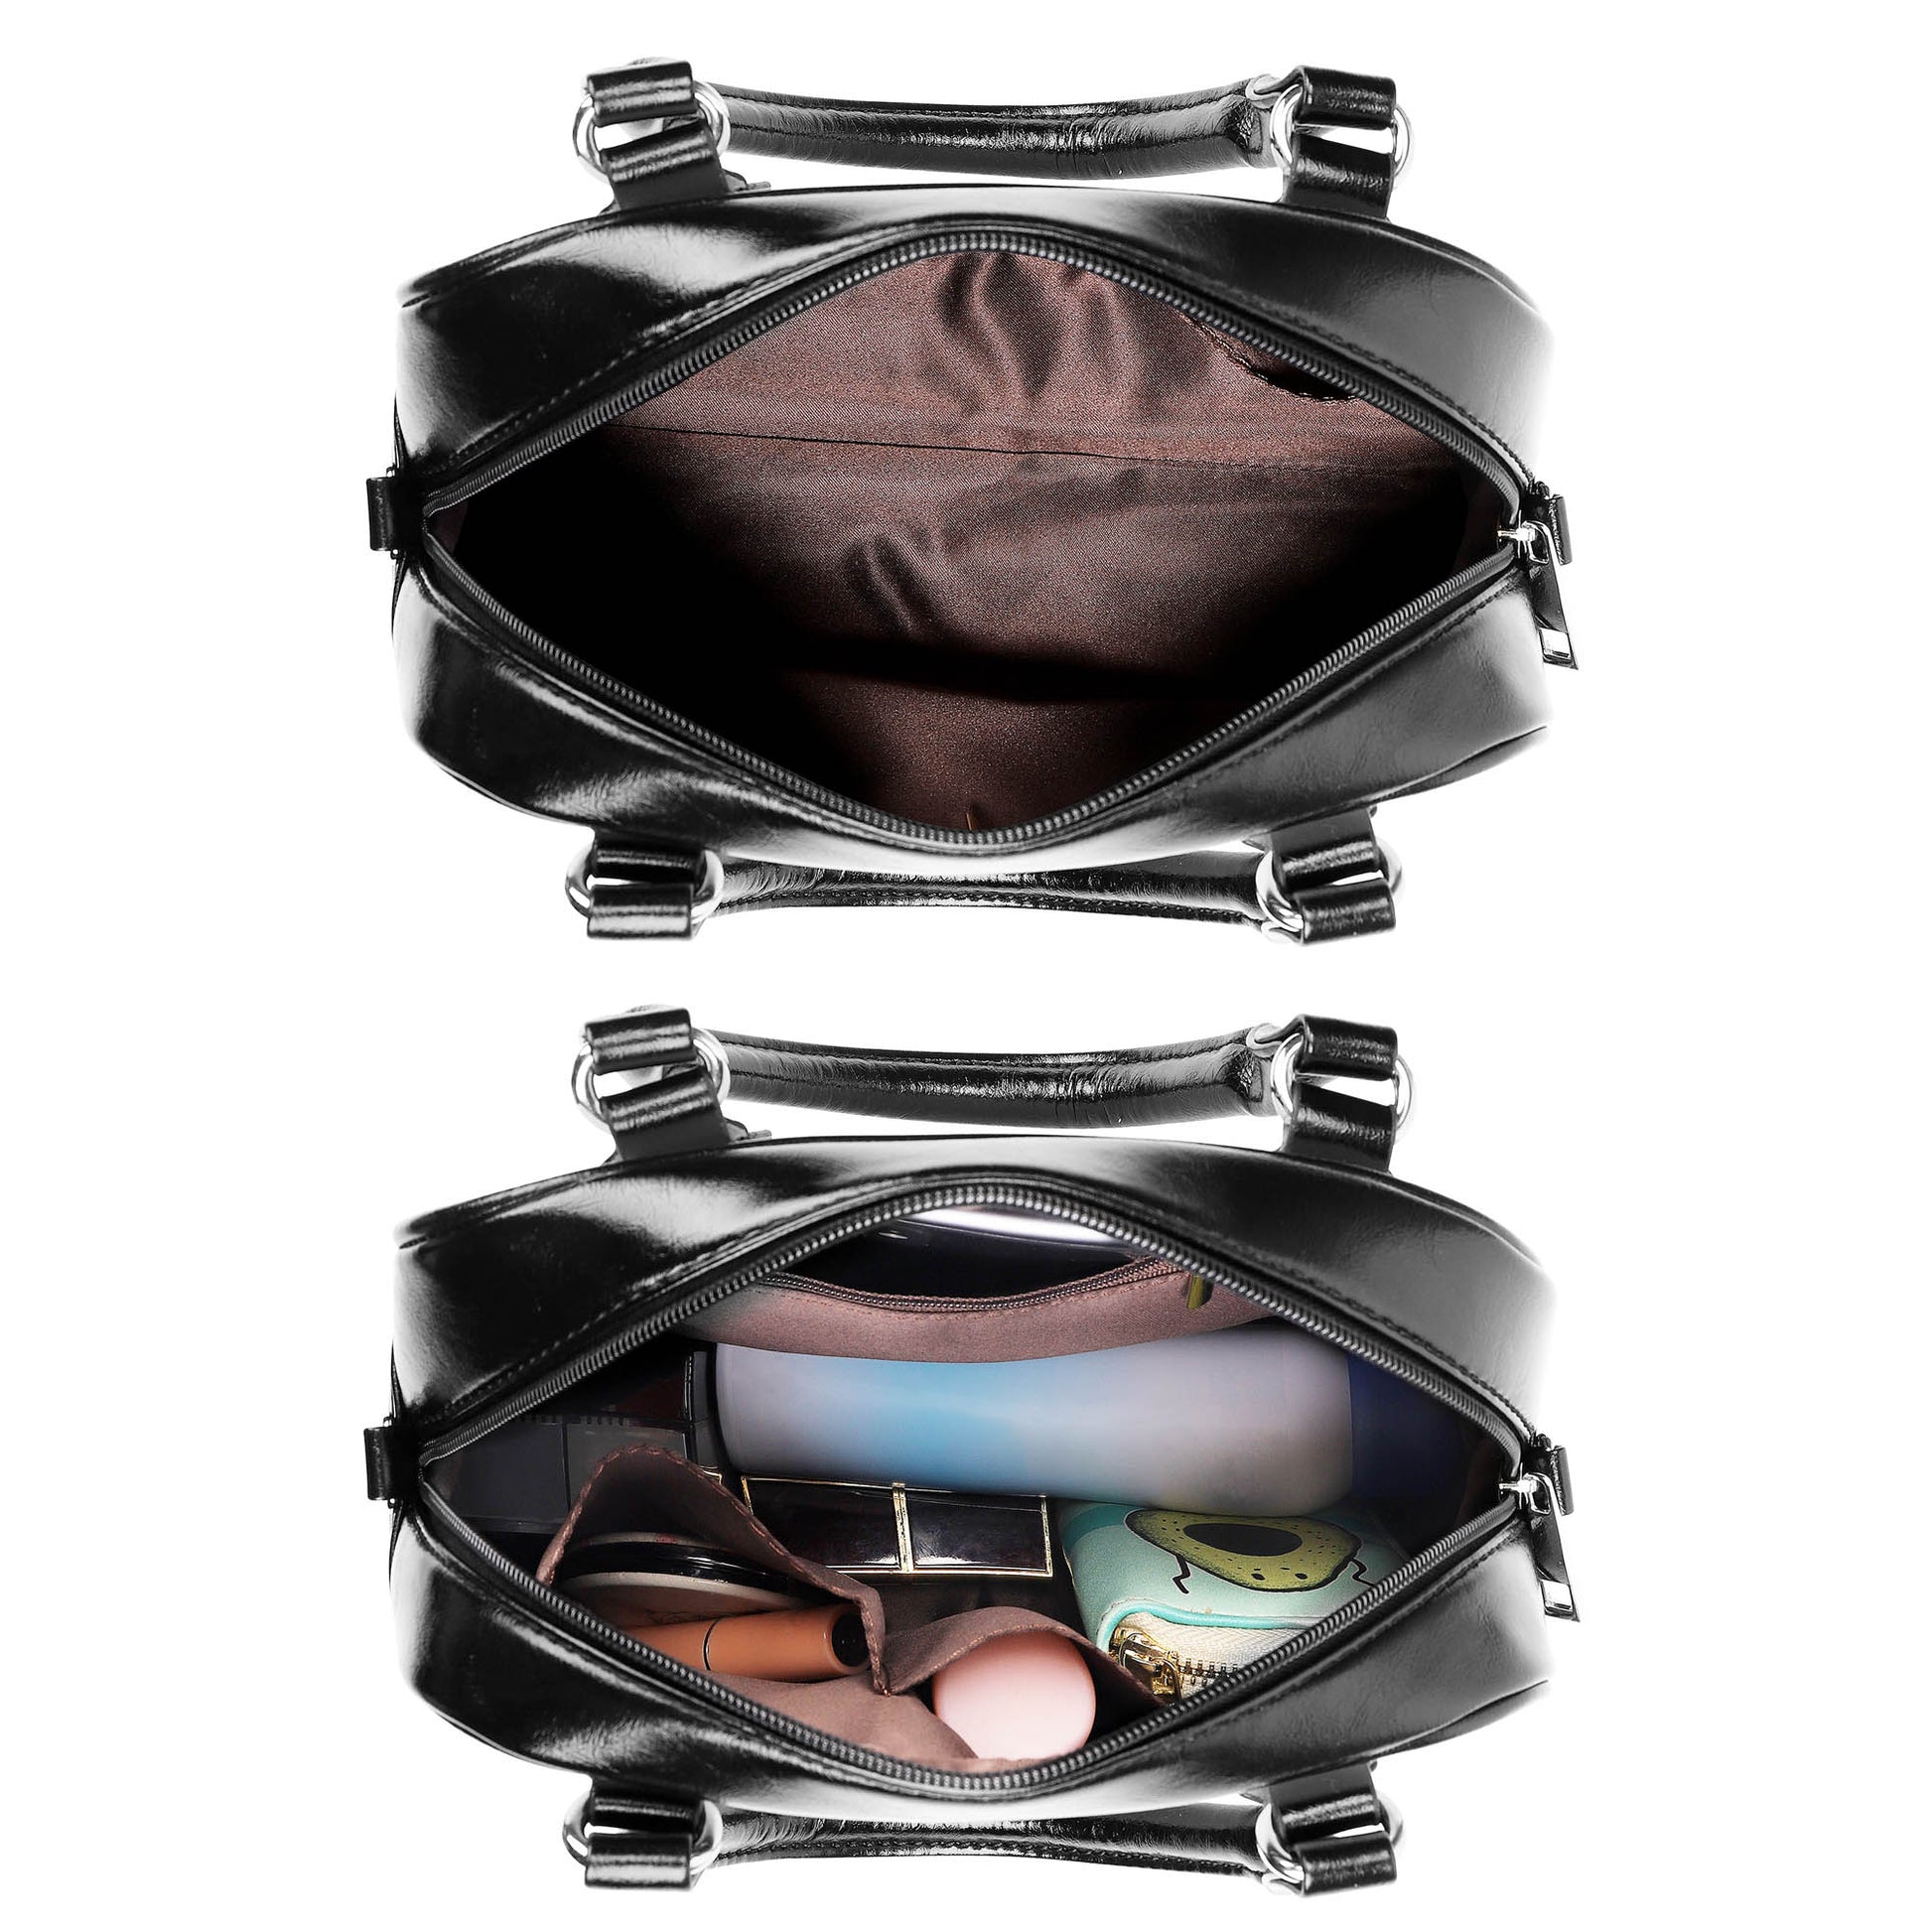 Spens (Spence) Tartan Shoulder Handbags - Tartanvibesclothing